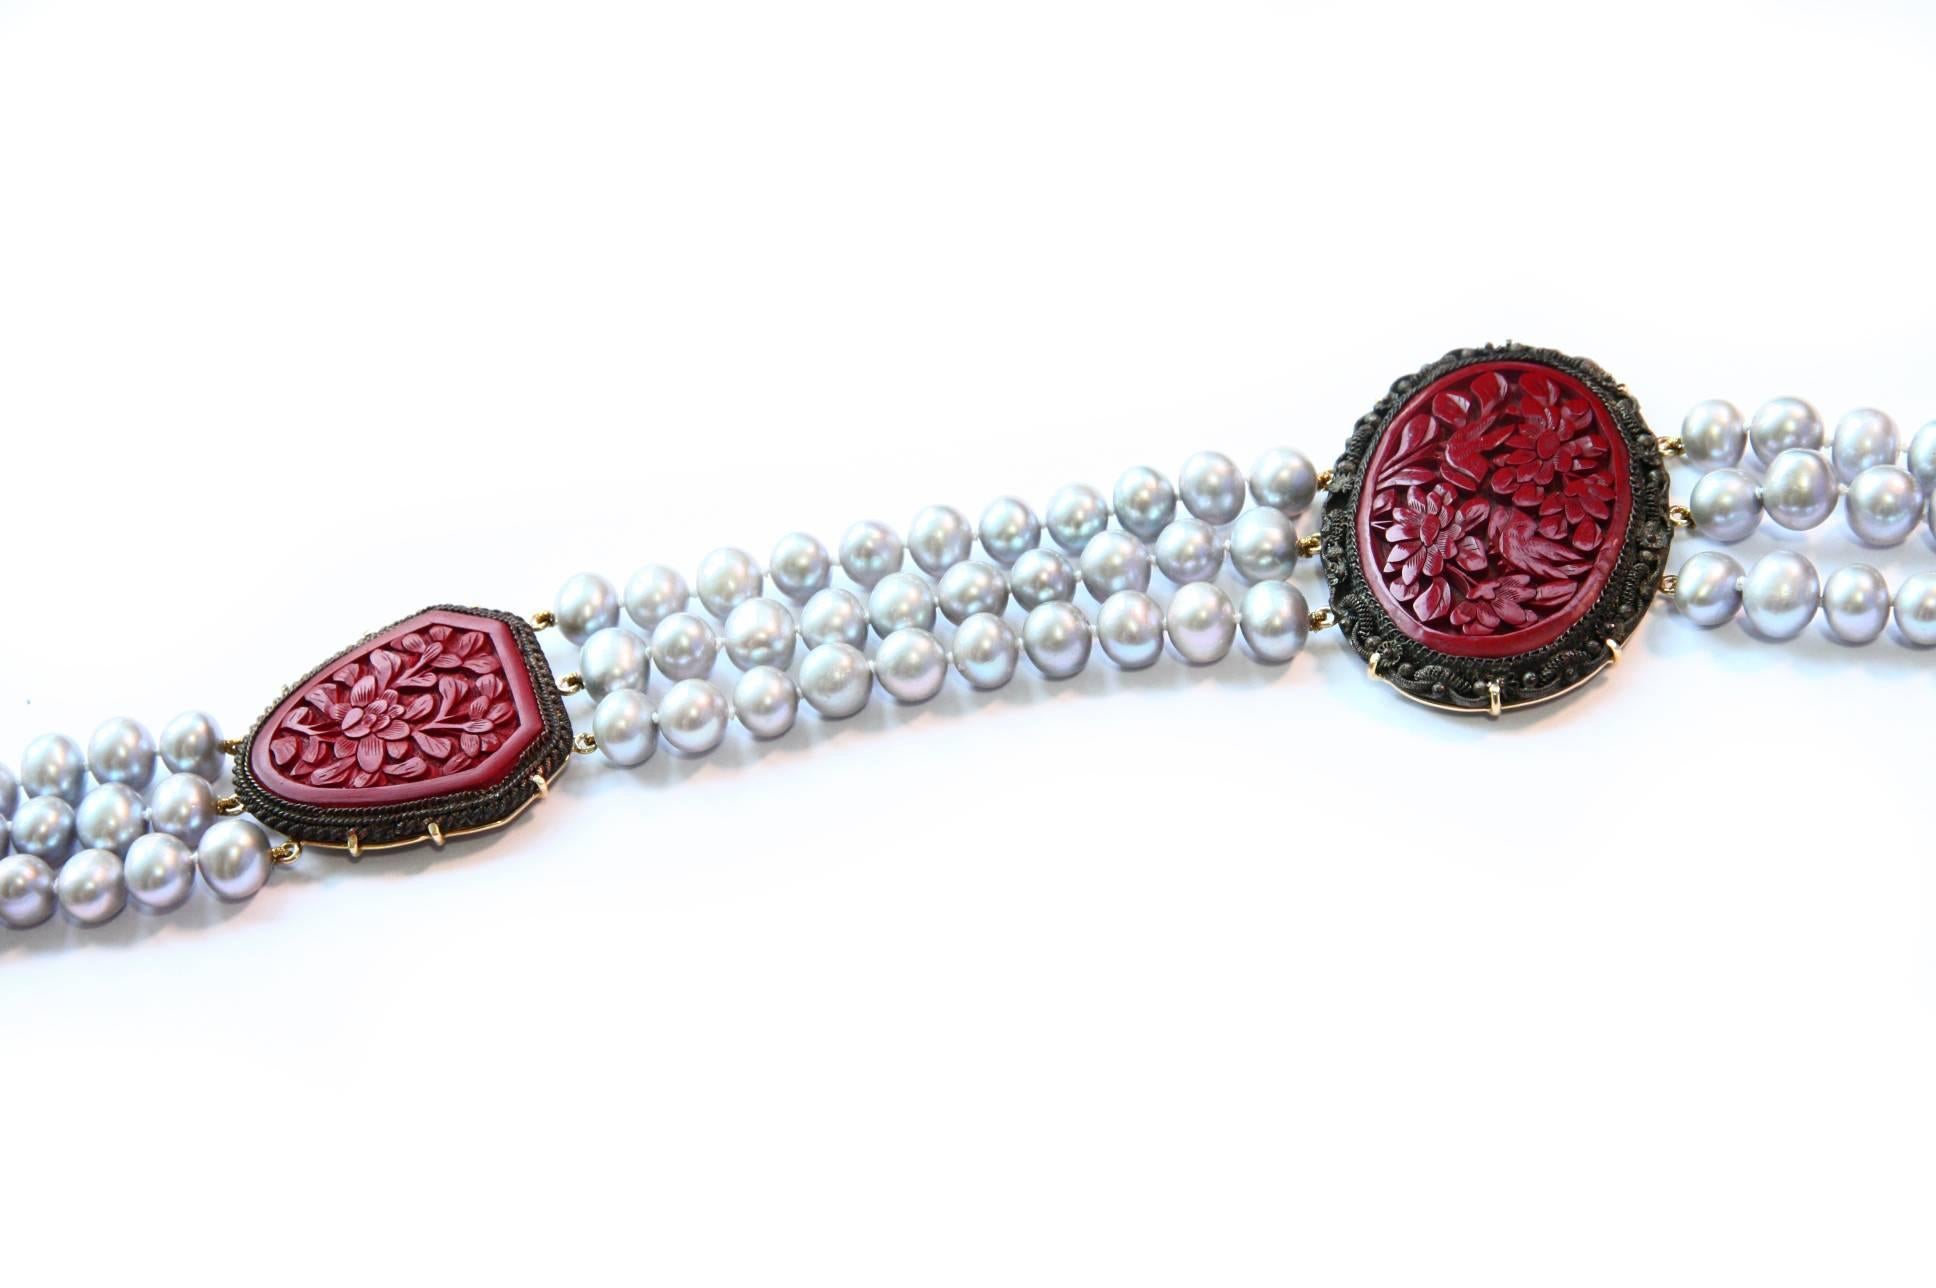 Long collier de perles grises avec 3 antiquités chinoises 1920  laque gravée avec fleur. Ils ont le filigrane original. or 19 kt gr 12,90. Longueur totale 98 cm.
Tous les bijoux Giulia Colussi sont neufs et n'ont jamais été portés ou possédés